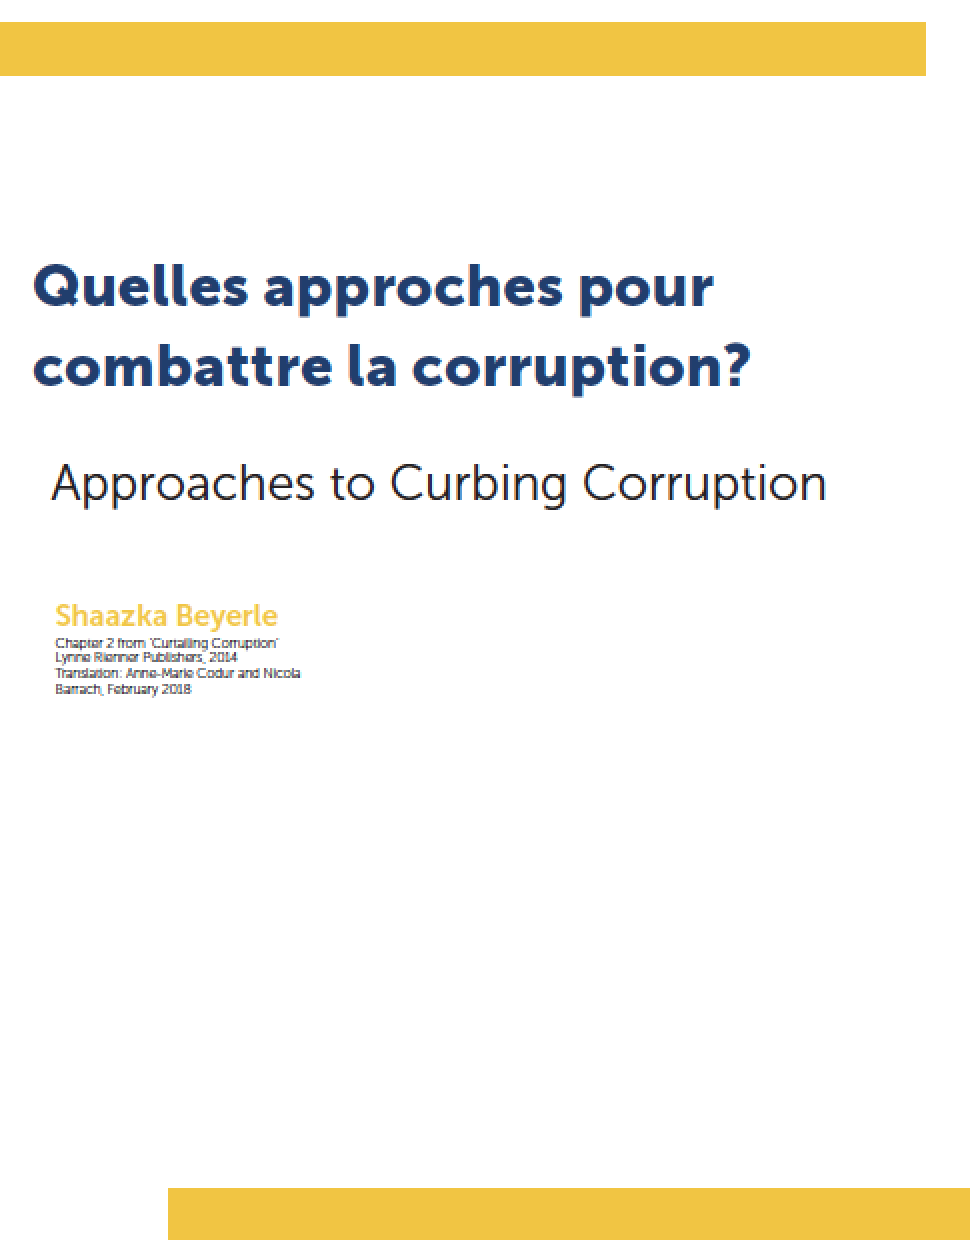 Quelles approches pour combattre la corruption?